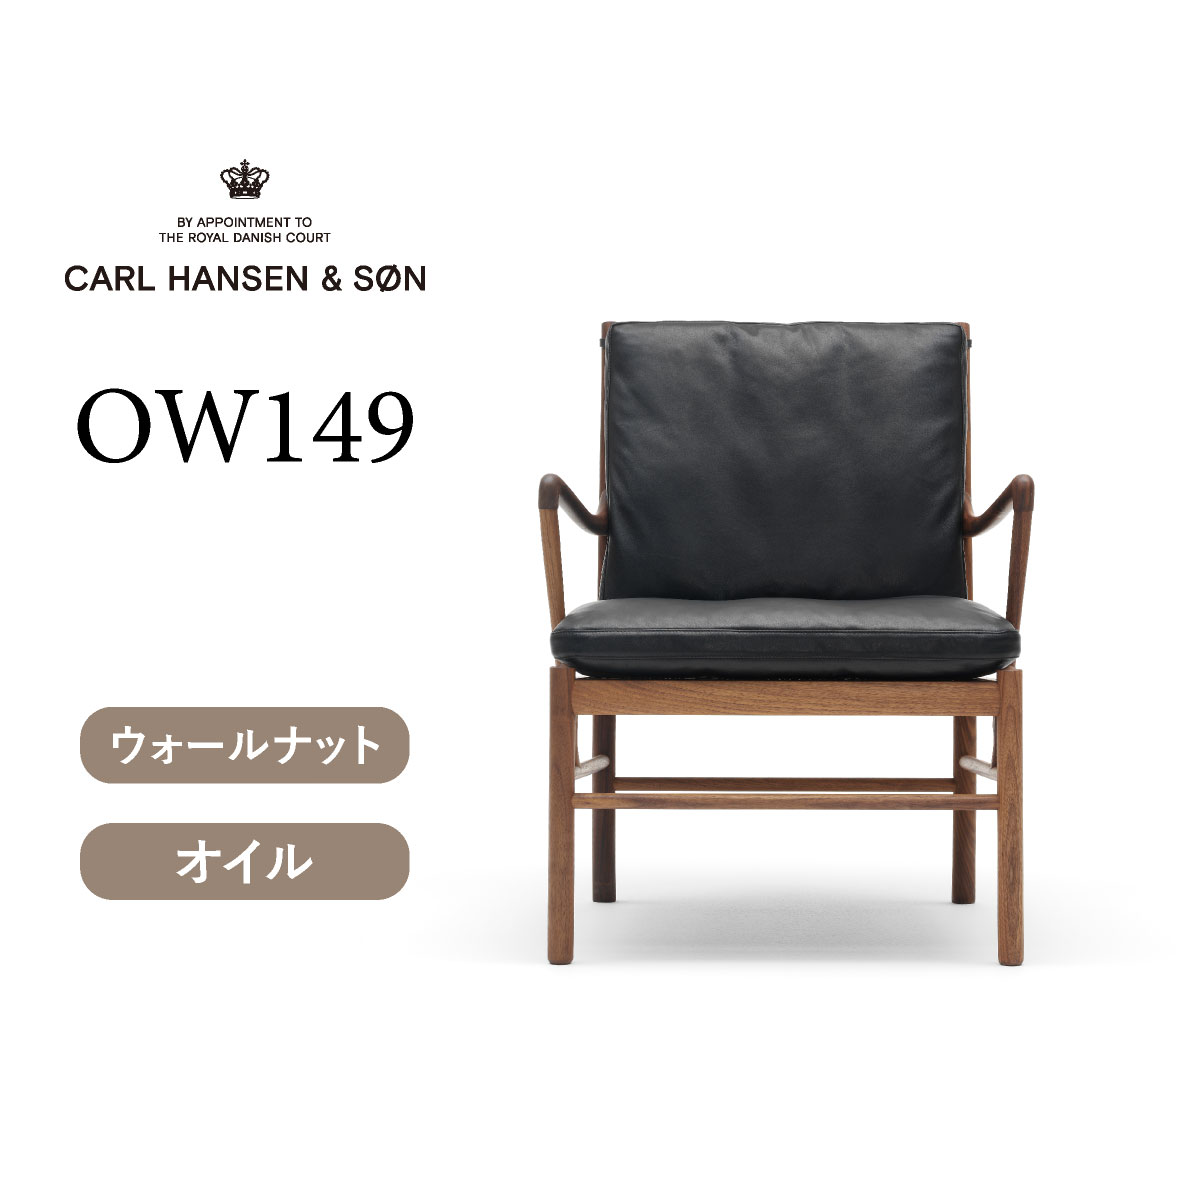 OW149 コロニアルチェア ウォールナット オイルフィニッシュ THOR301（ブラックレザー） CARL HANSEN & SON （カールハンセン)